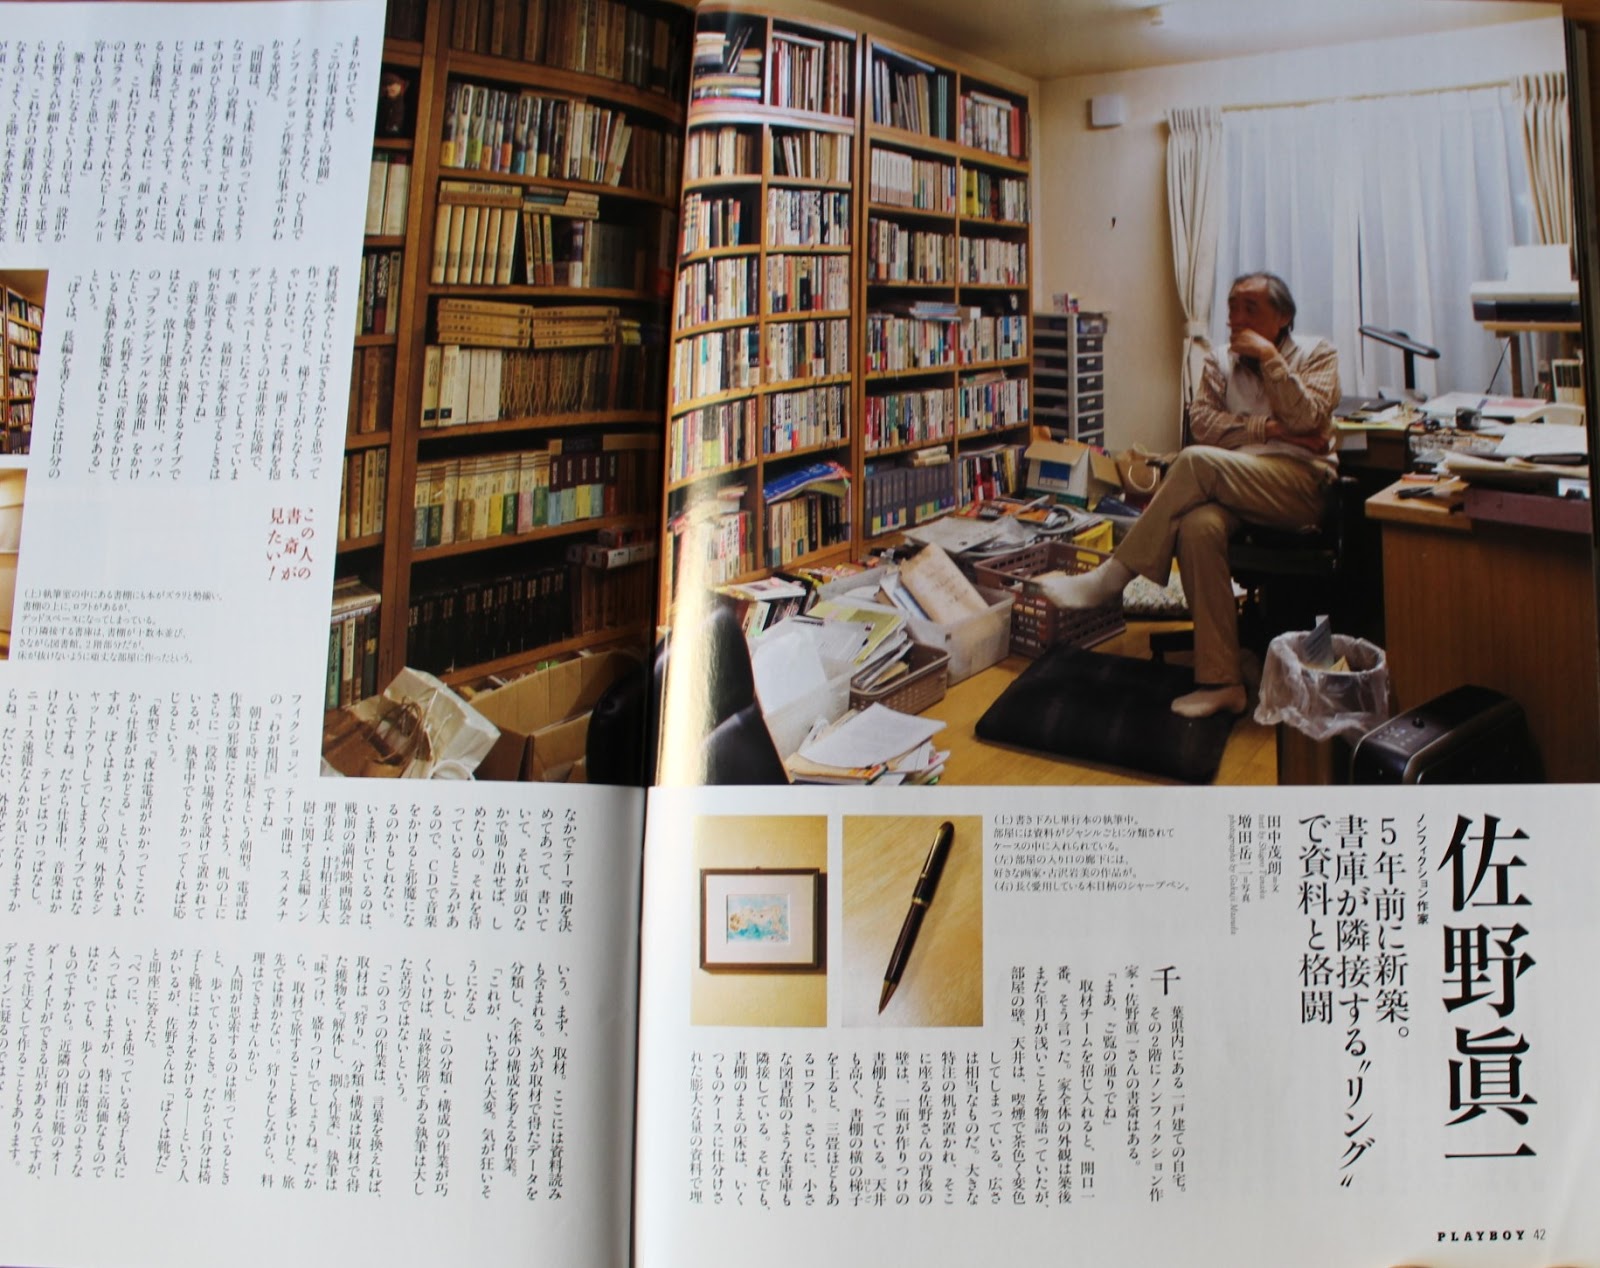 私の本棚 Playboy アメリカのplayboy誌の日本版 月刊プレイボーイ この人の書斎が見たい